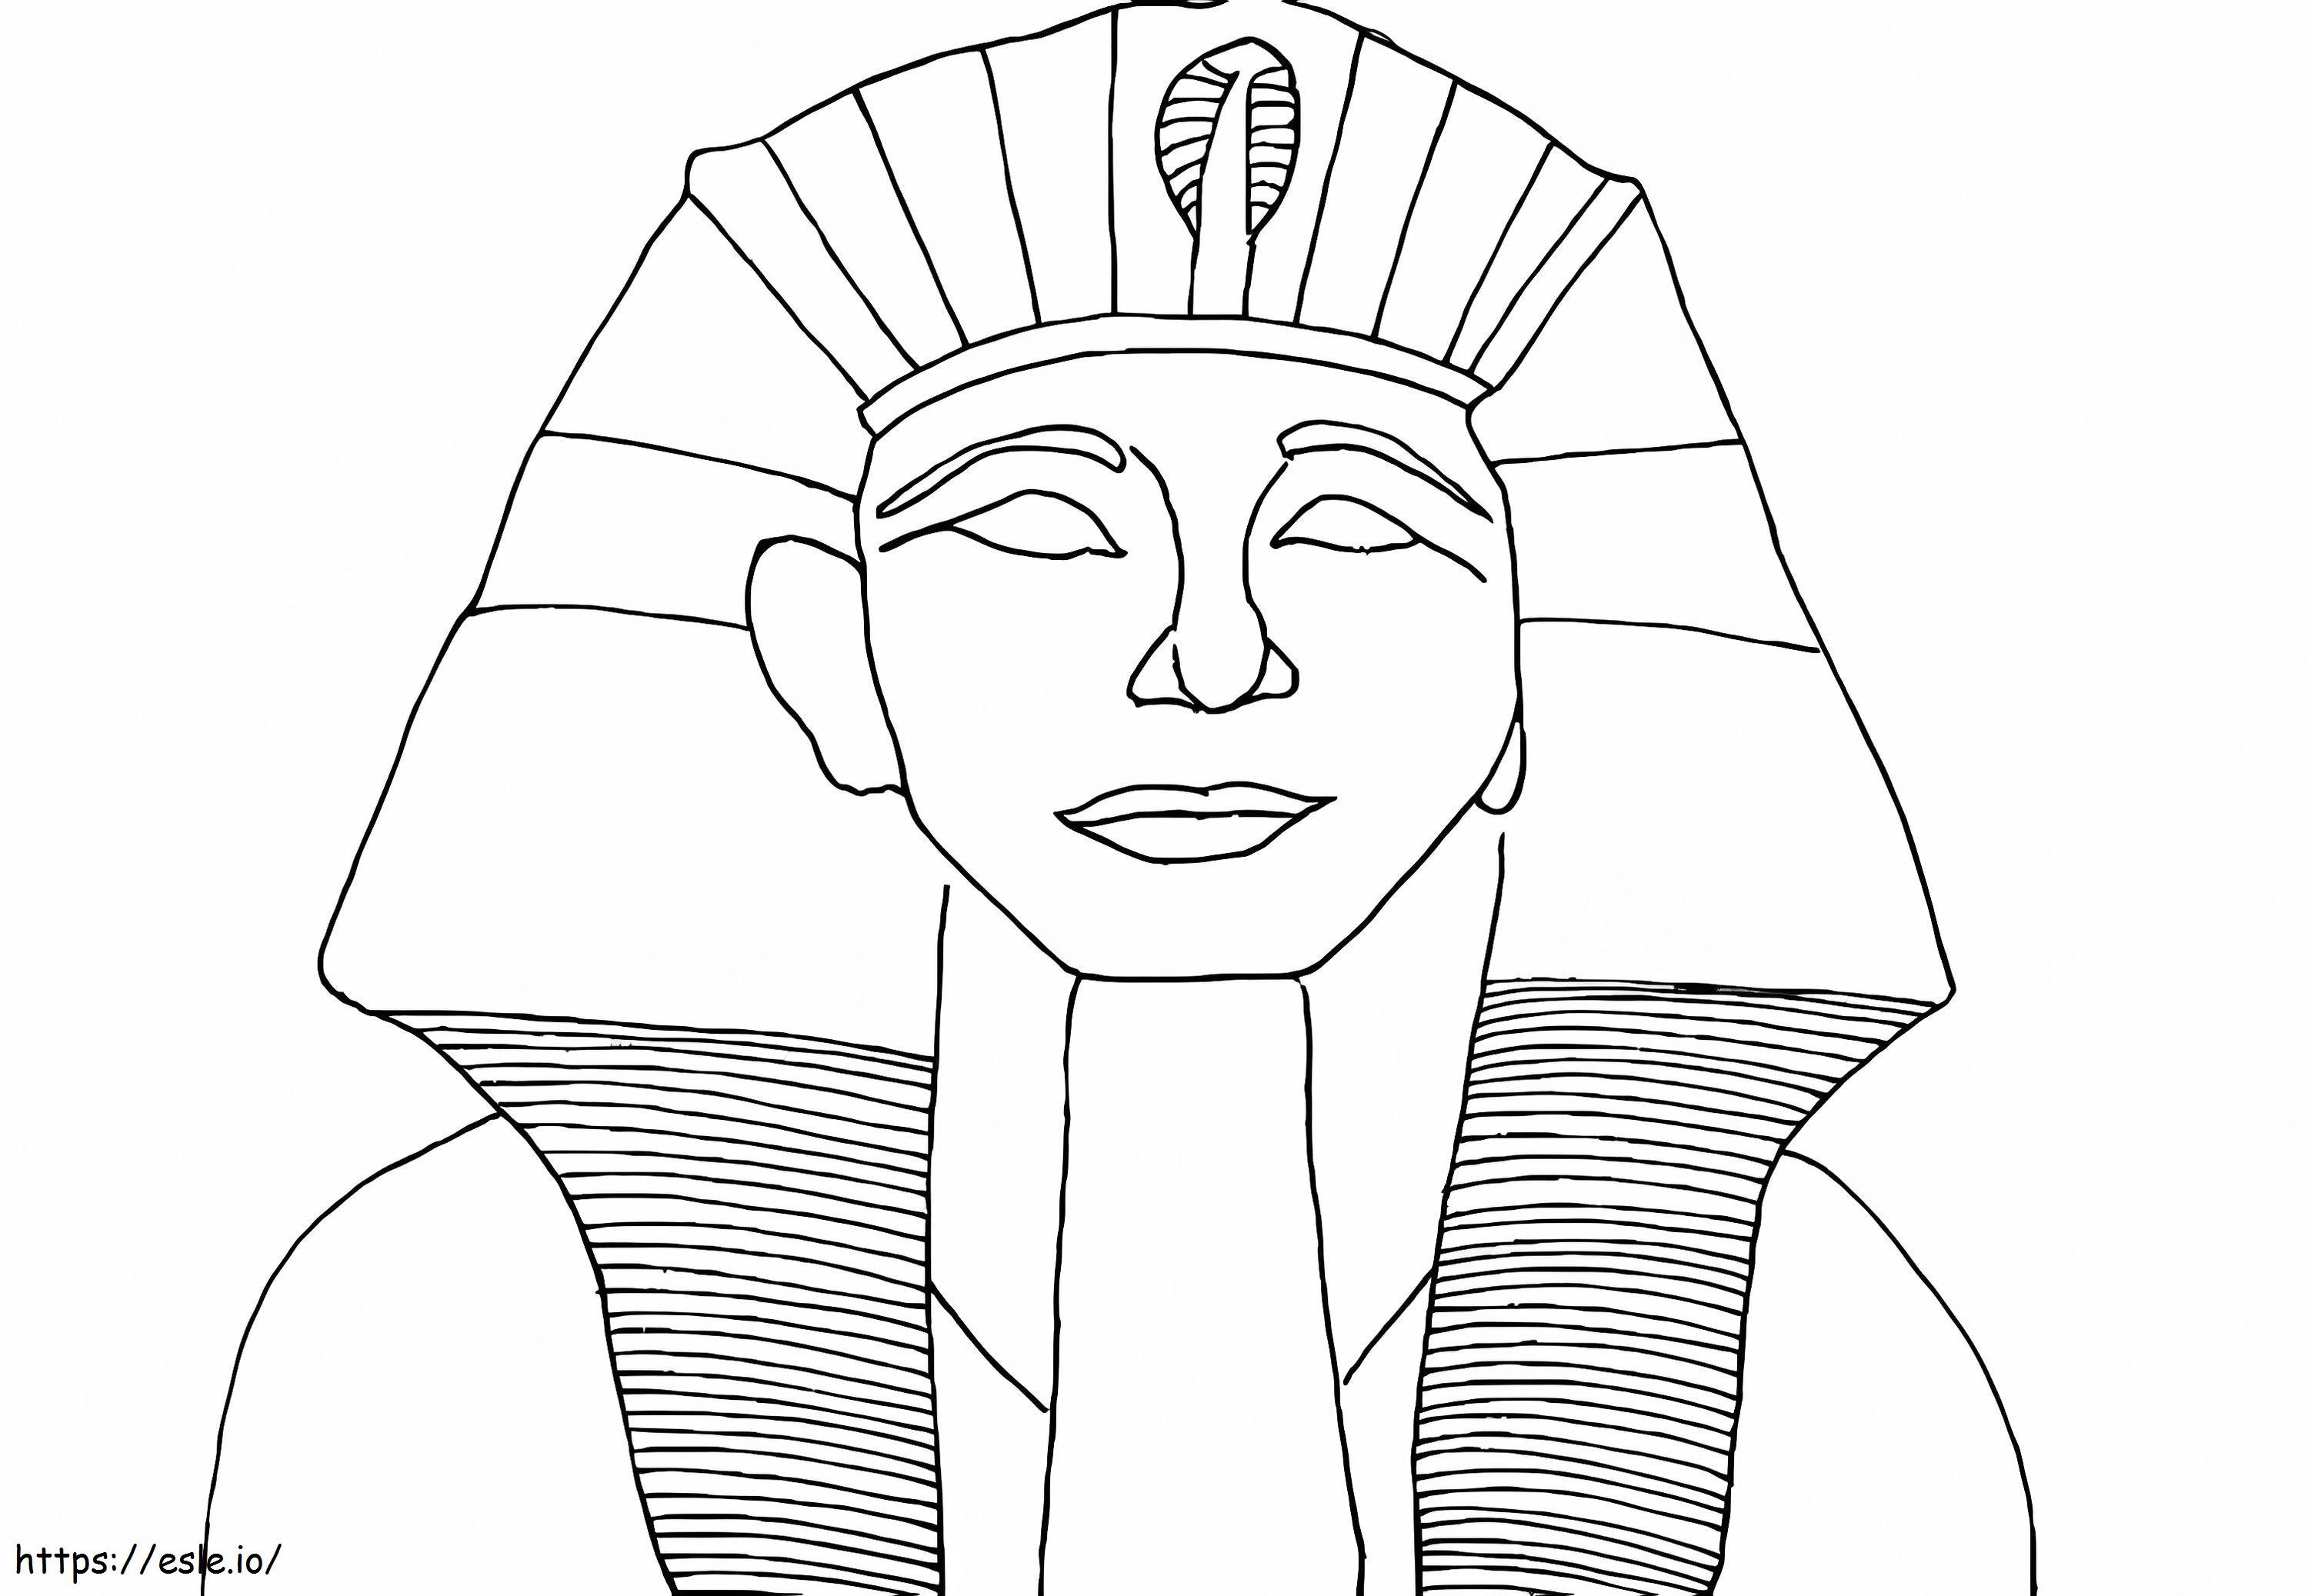 1493903742 Faraone egiziano da colorare